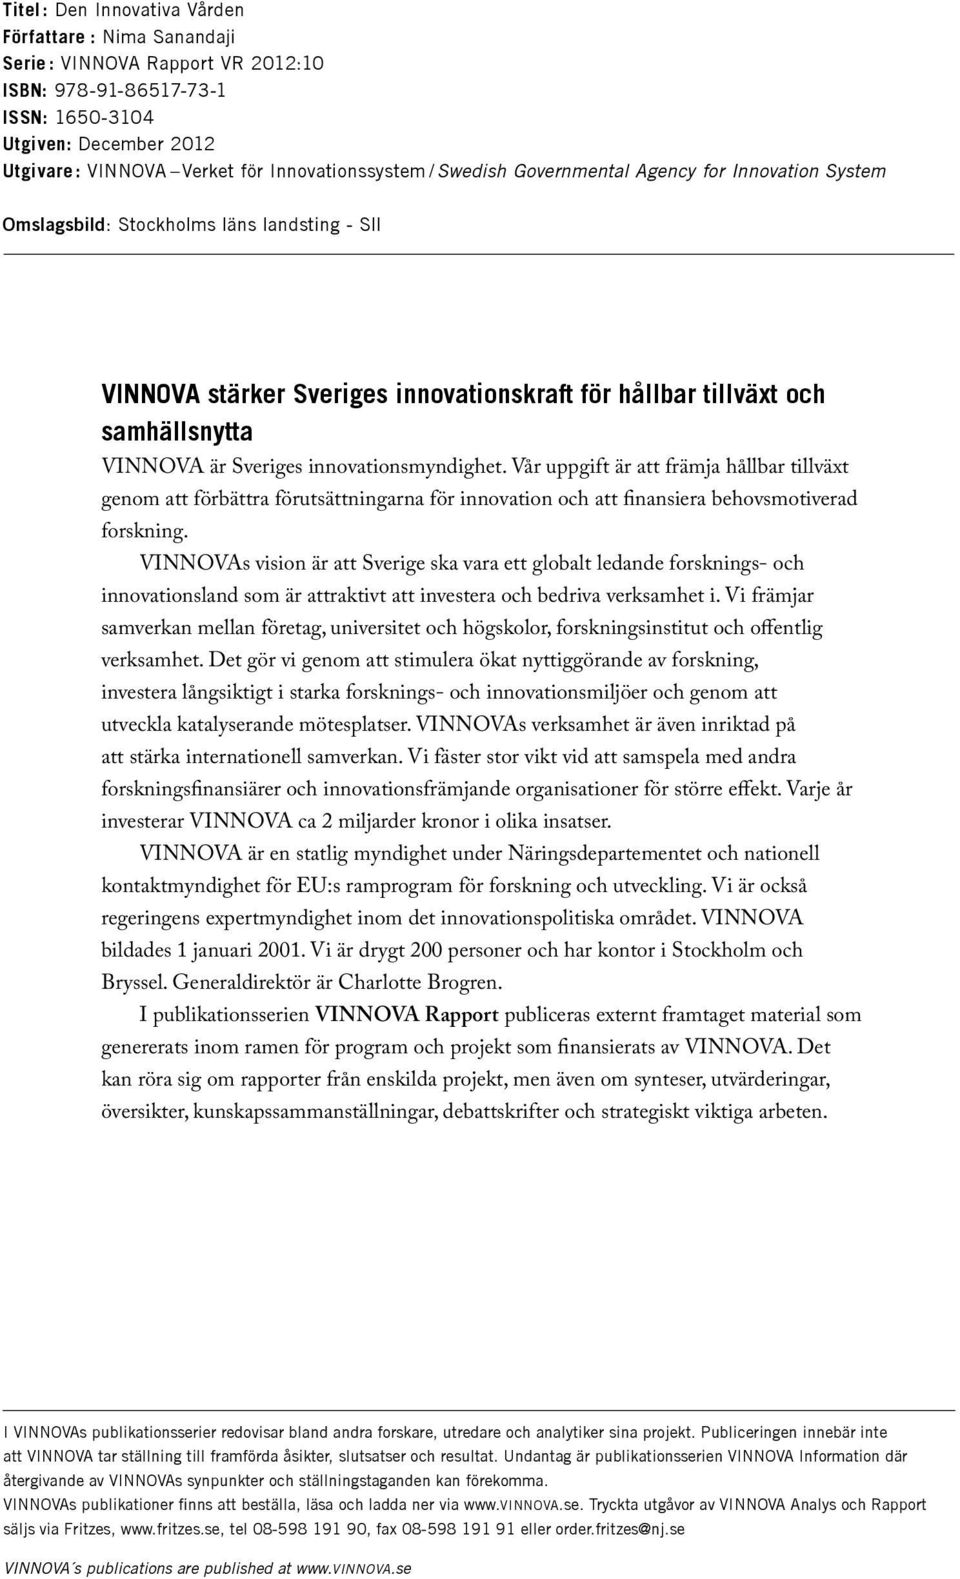 VINNOVA är Sveriges innovationsmyndighet. Vår uppgift är att främja hållbar tillväxt genom att förbättra förutsättningarna för innovation och att finansiera behovsmotiverad forskning.